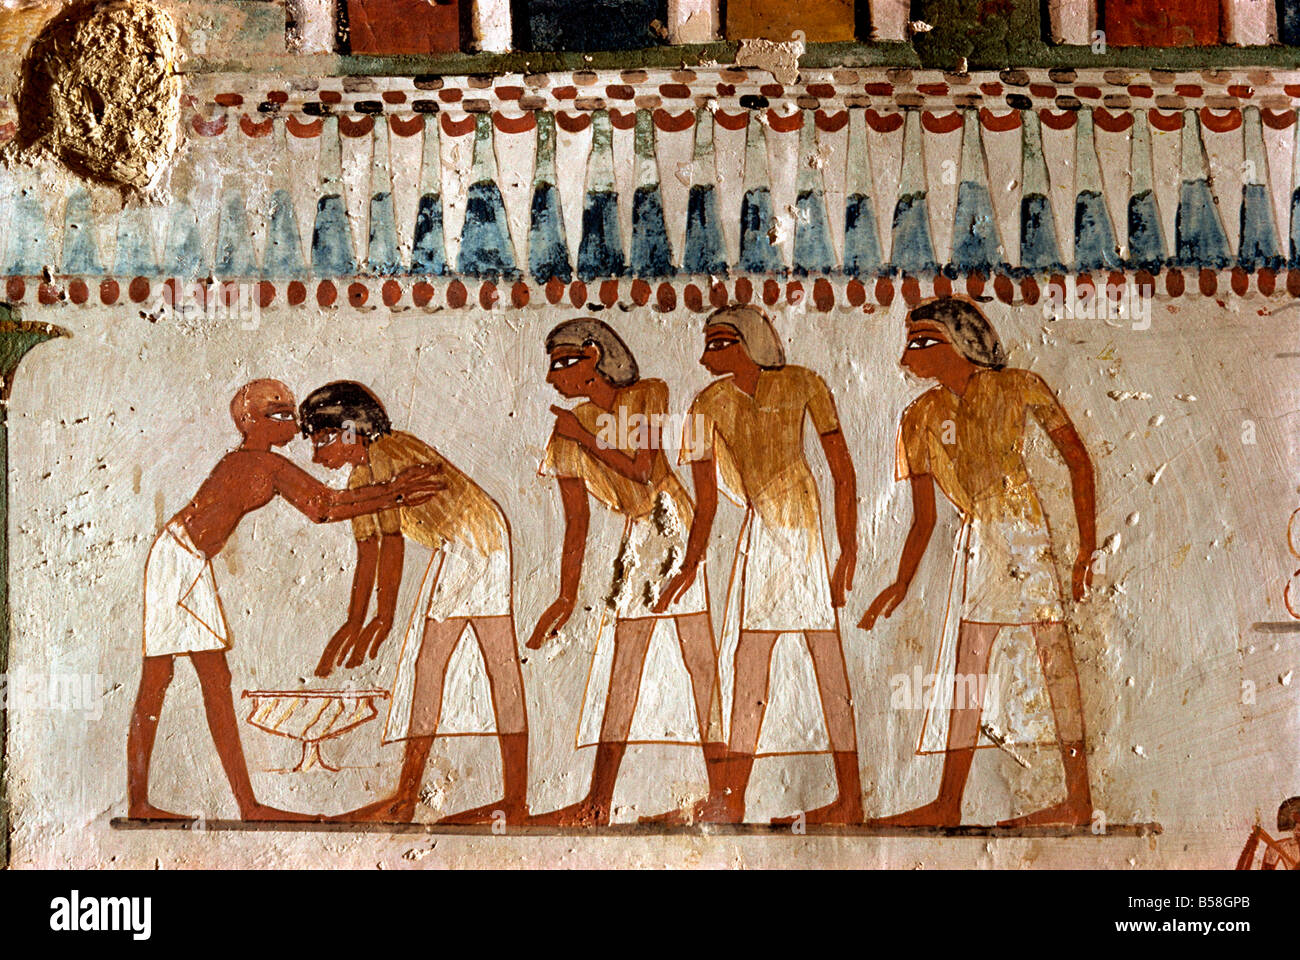 Scène de récolte de l'époque de la xviiie dynastie intendant des terres Cheikh Aba el Kurna Tombe de Menna Thèbes Egypte Afrique W Rawlings Banque D'Images